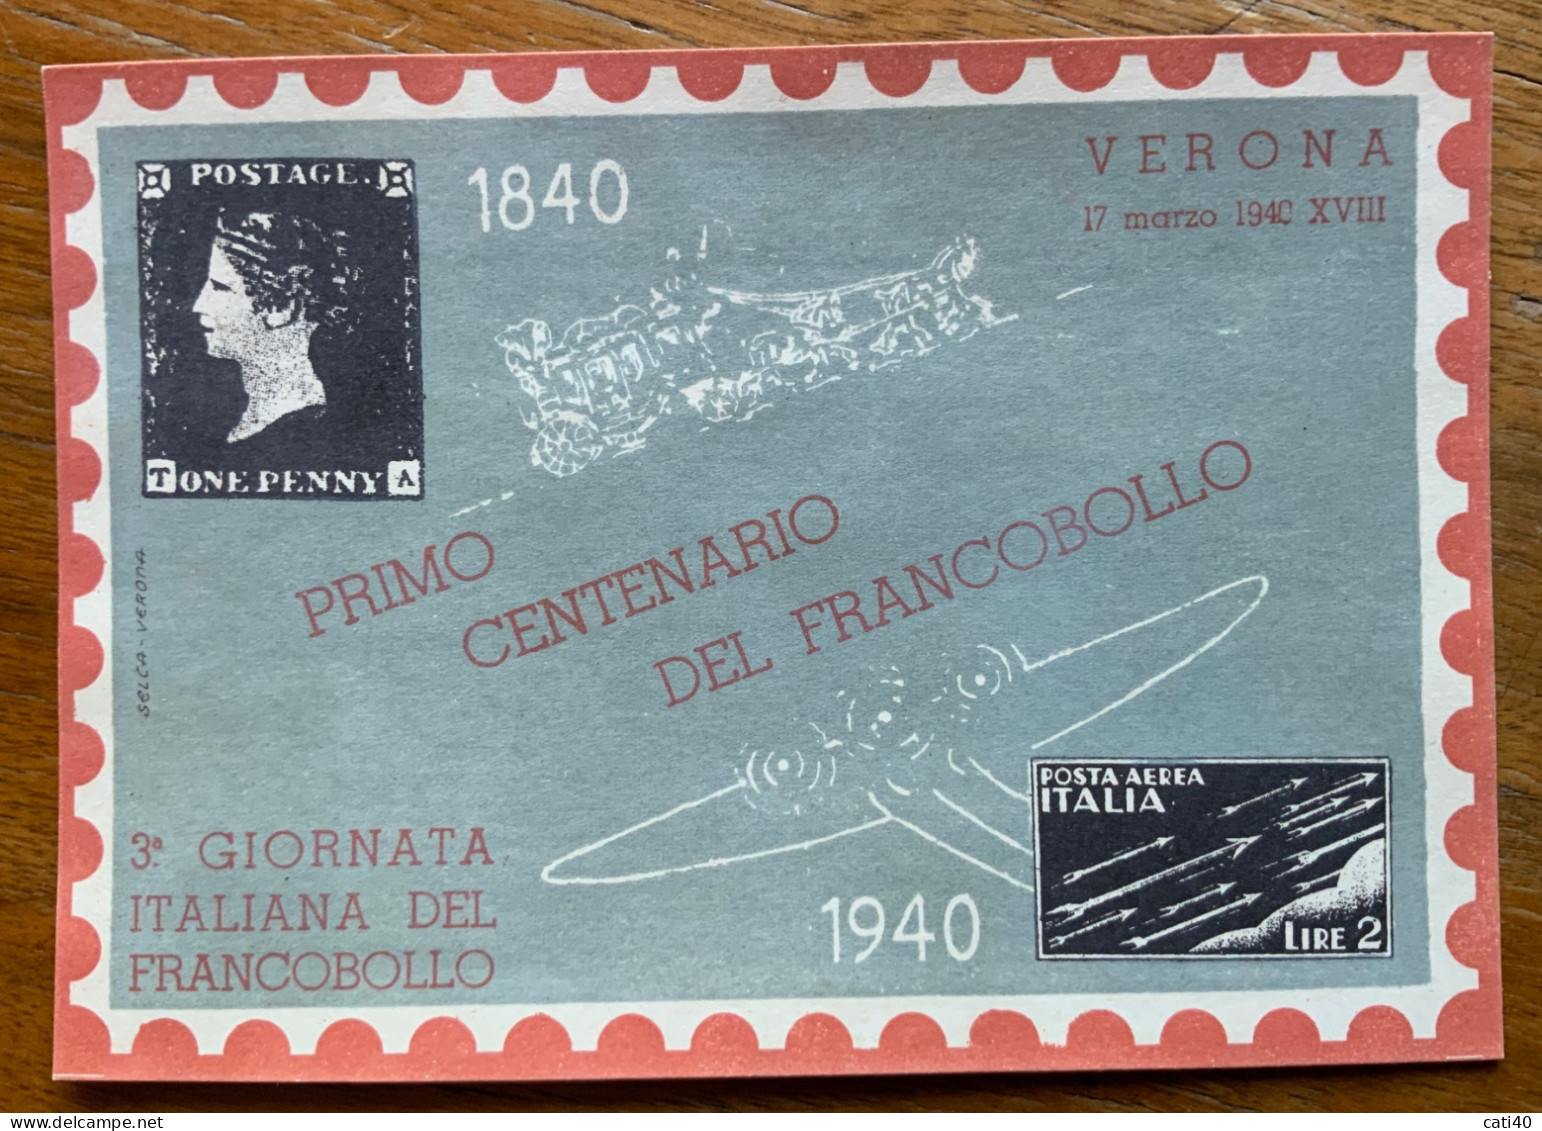 PRIMO CENTENARIO DEL FRANCOBOLLO 1840 - 1940 - VERONA 3 GIORNATA ITALIANA DEL FRANCOBOLLO - Demonstrationen